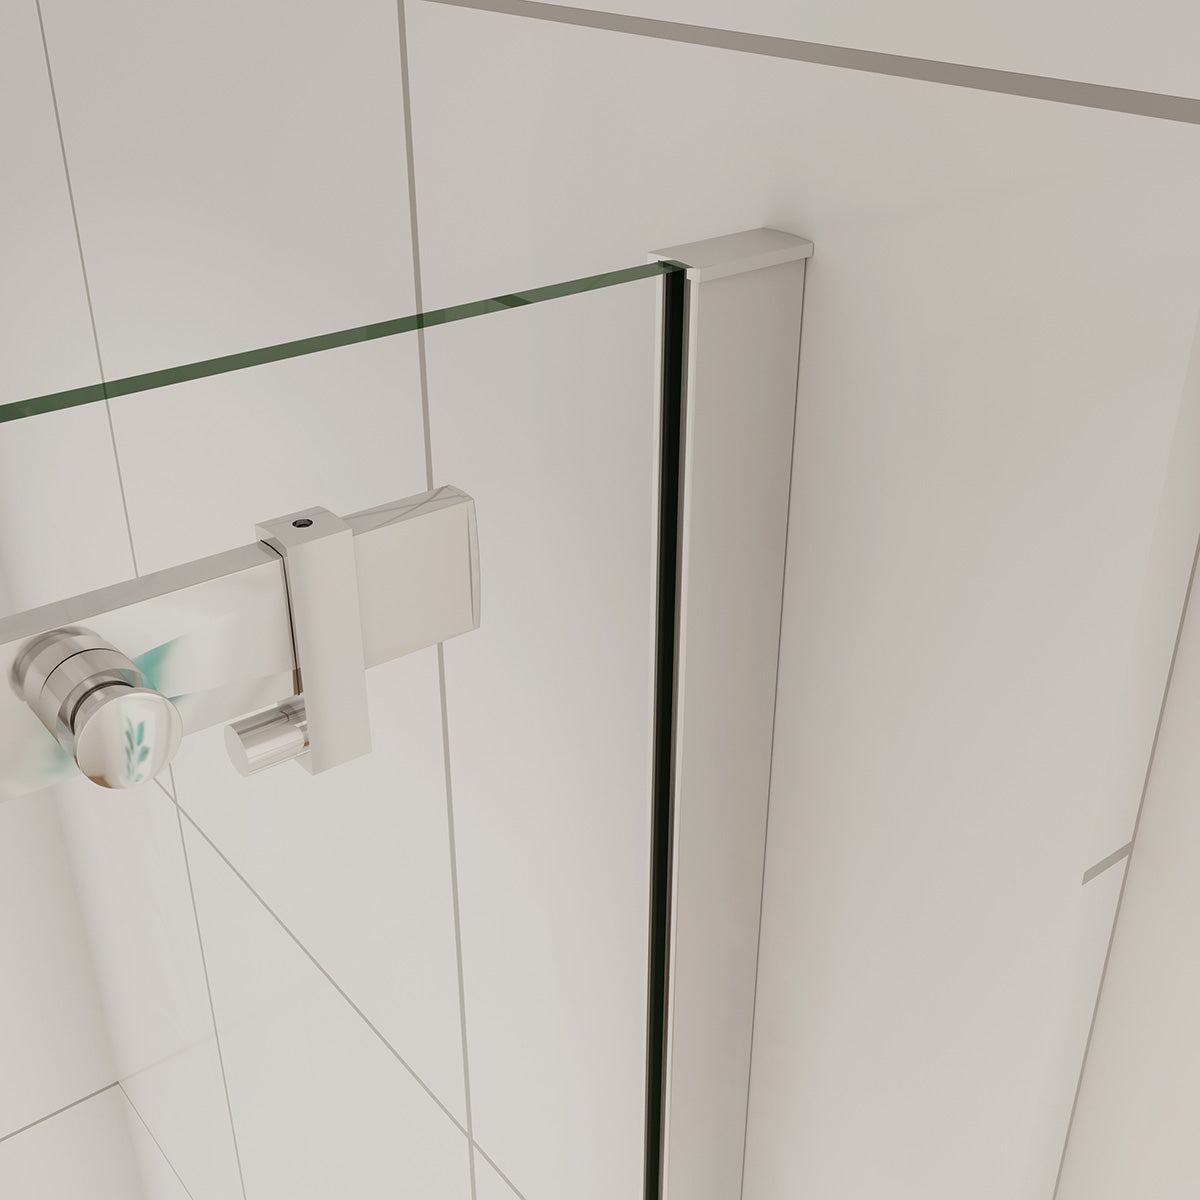 Duschtür+Seitenwand Schiebetür 120x70 cm Glasstärke 6mm Dusche Duschabtrennung Duschkabine